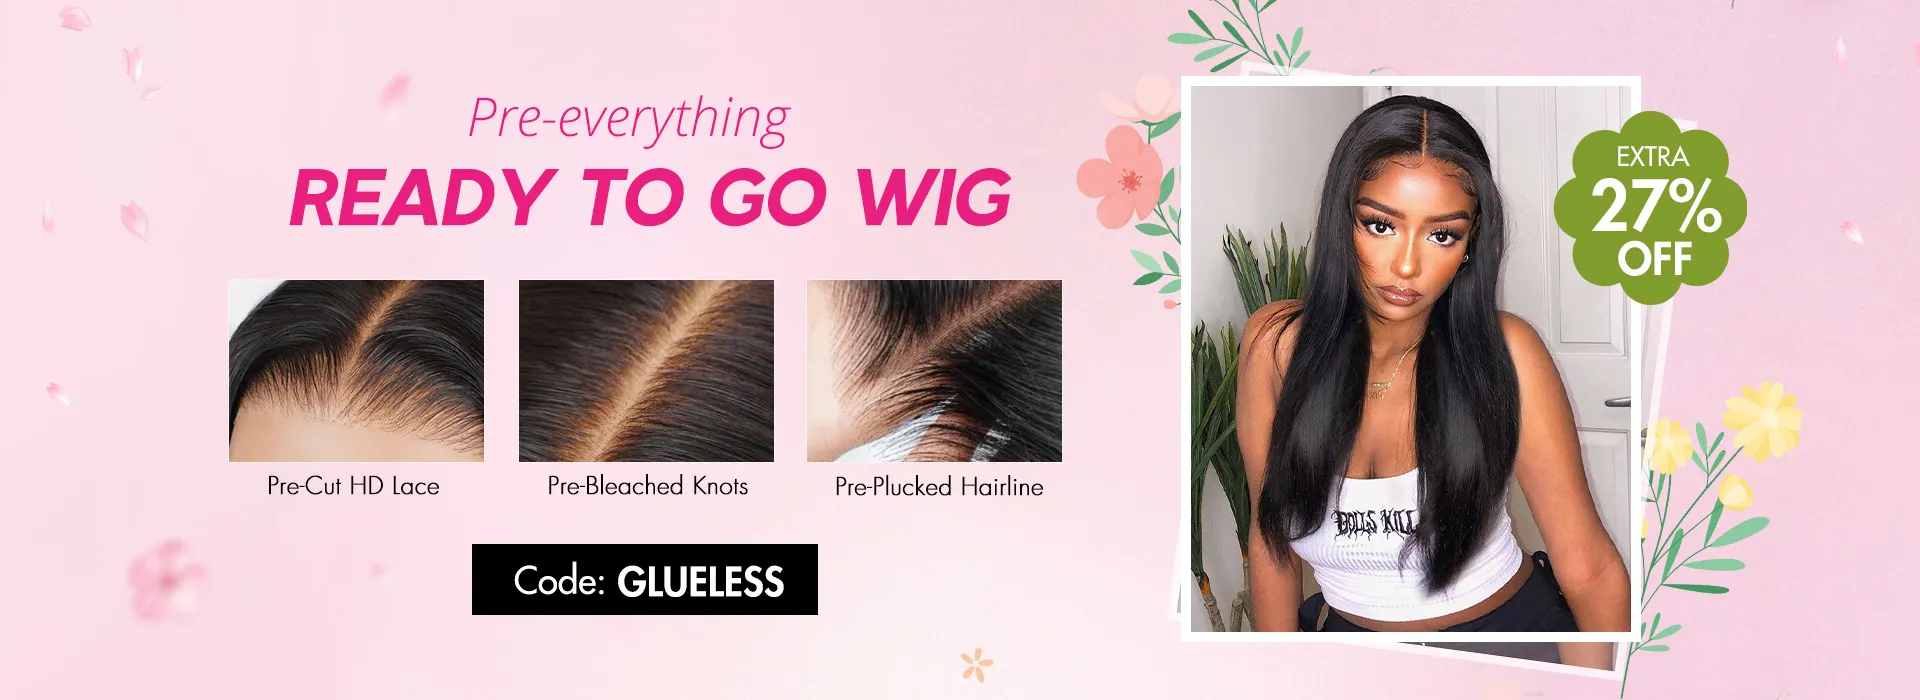 Tinashe hair wear go wig